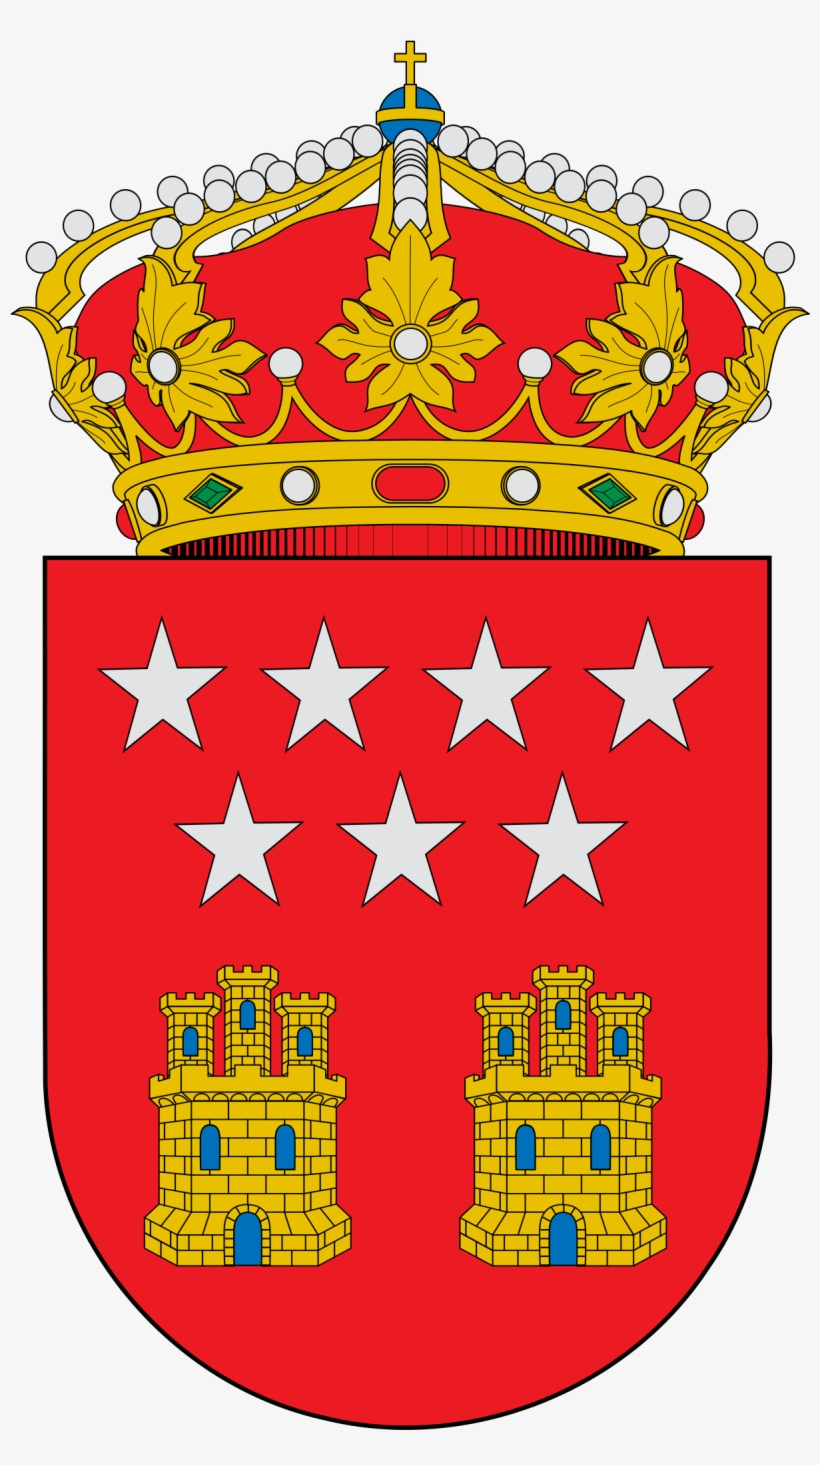 Escudo Prado Del Rey, transparent png #5261500